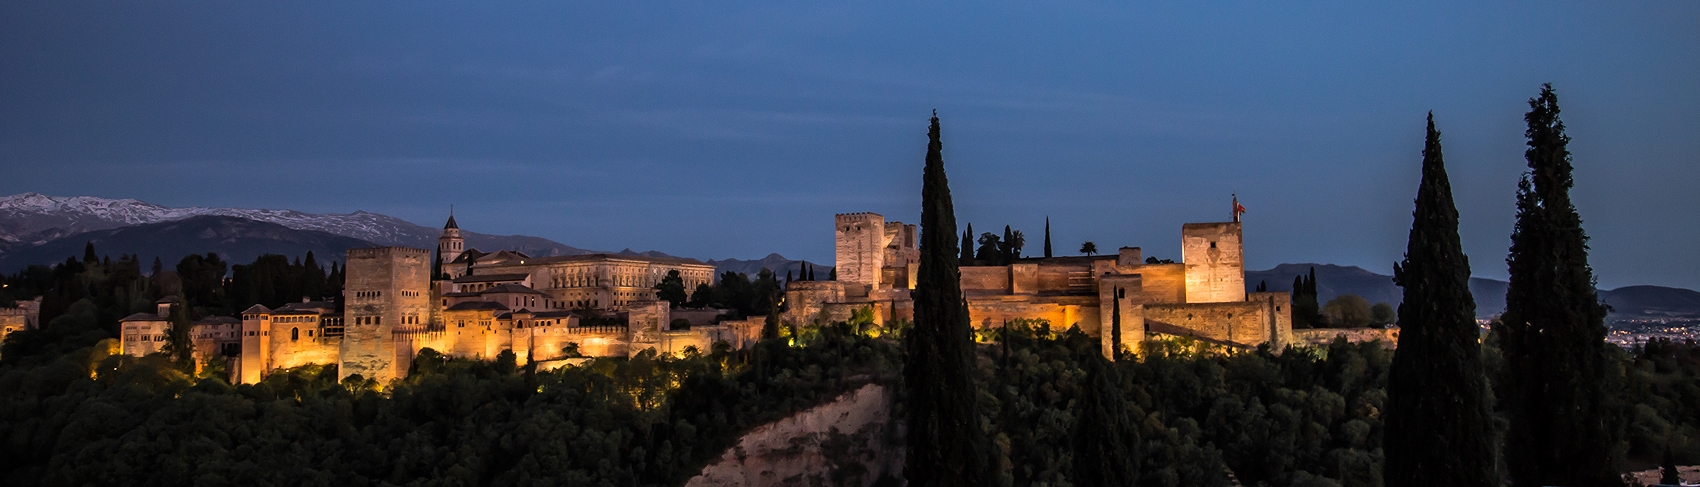 The Alhambra at dusk